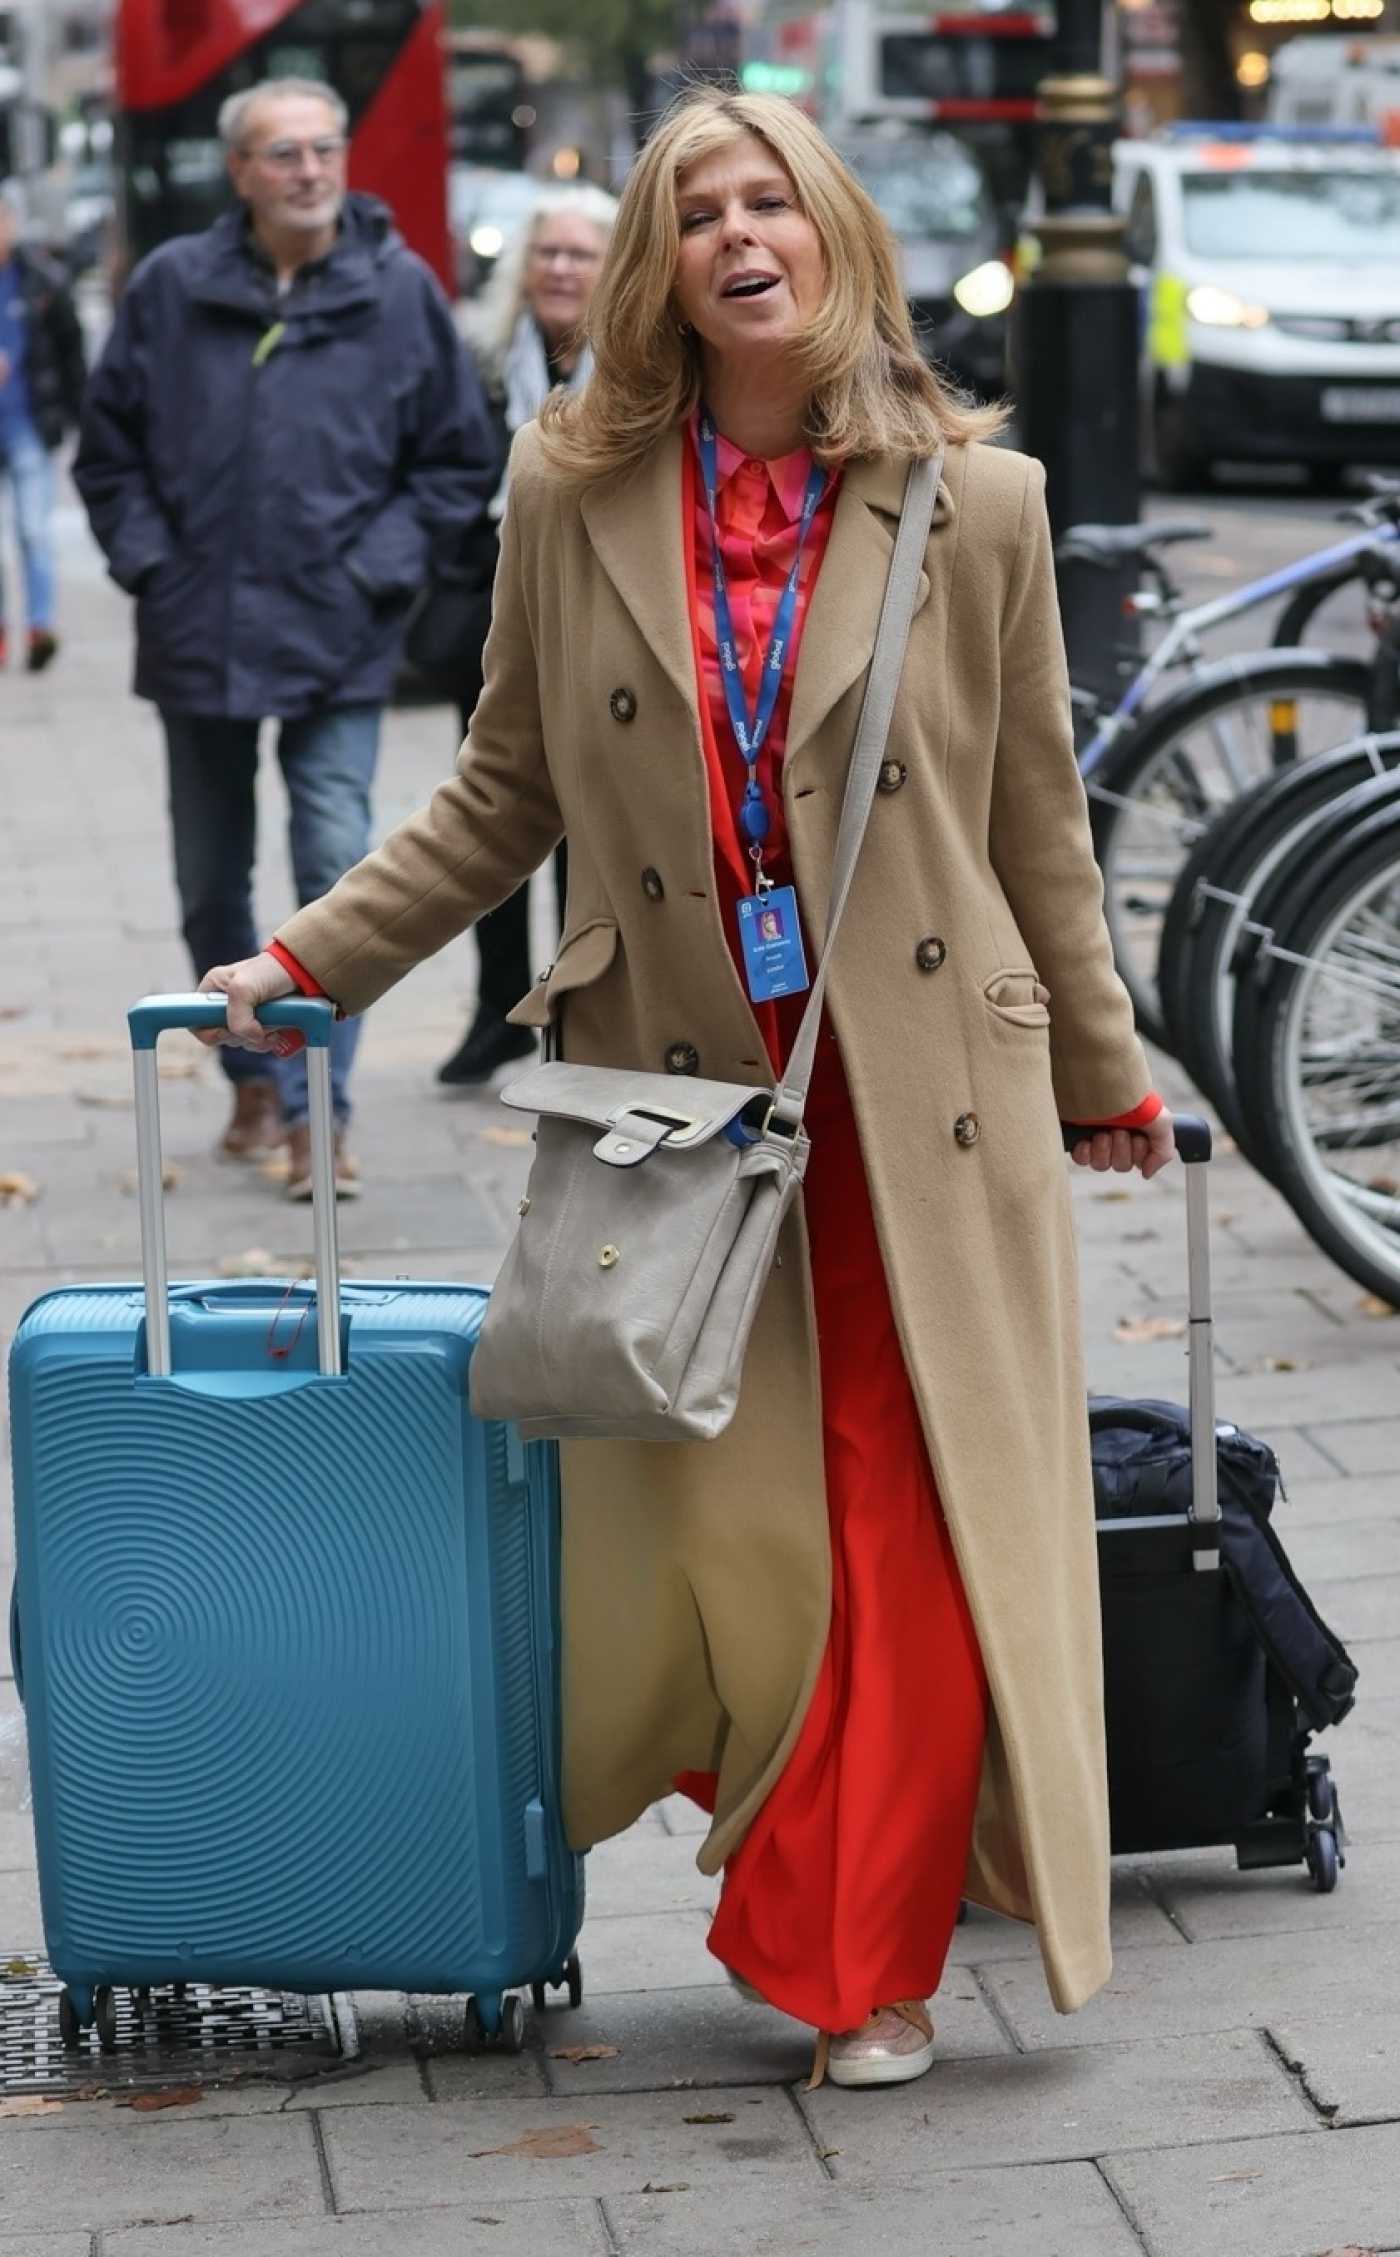 Kate Garraway in a Beige Coat Leaves the Smooth Radio in London 11/02/2023